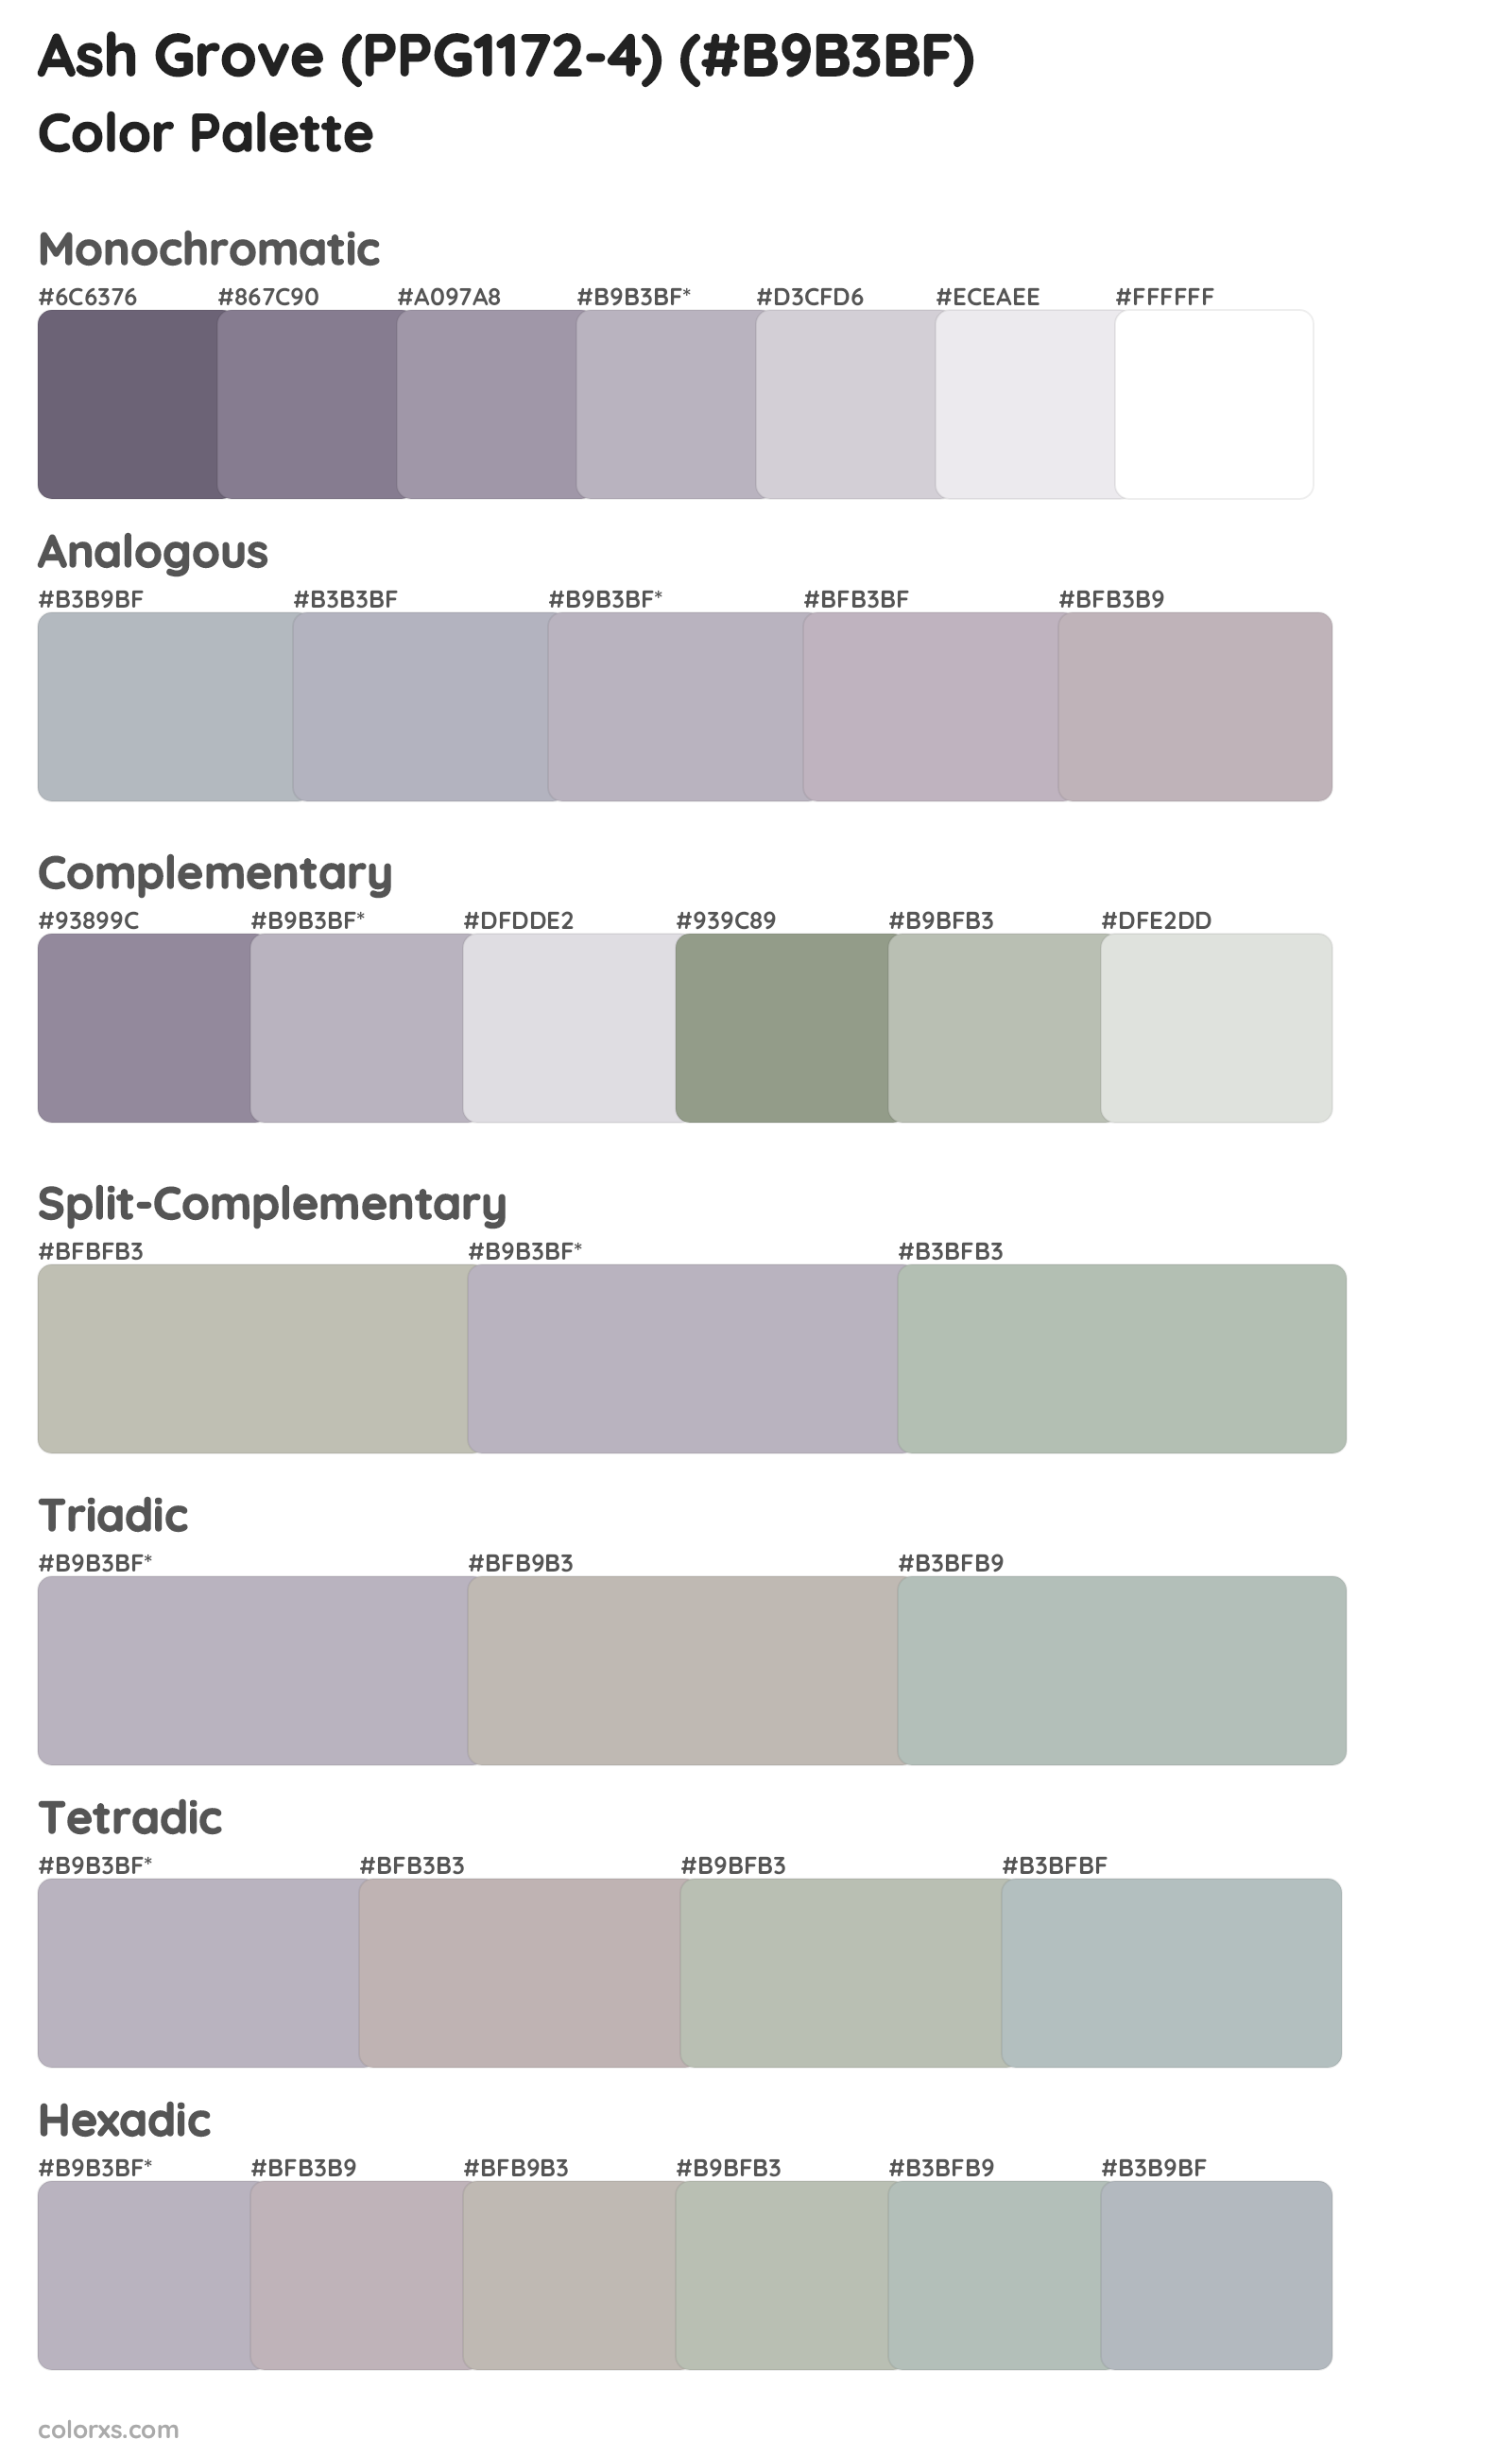 Ash Grove (PPG1172-4) Color Scheme Palettes